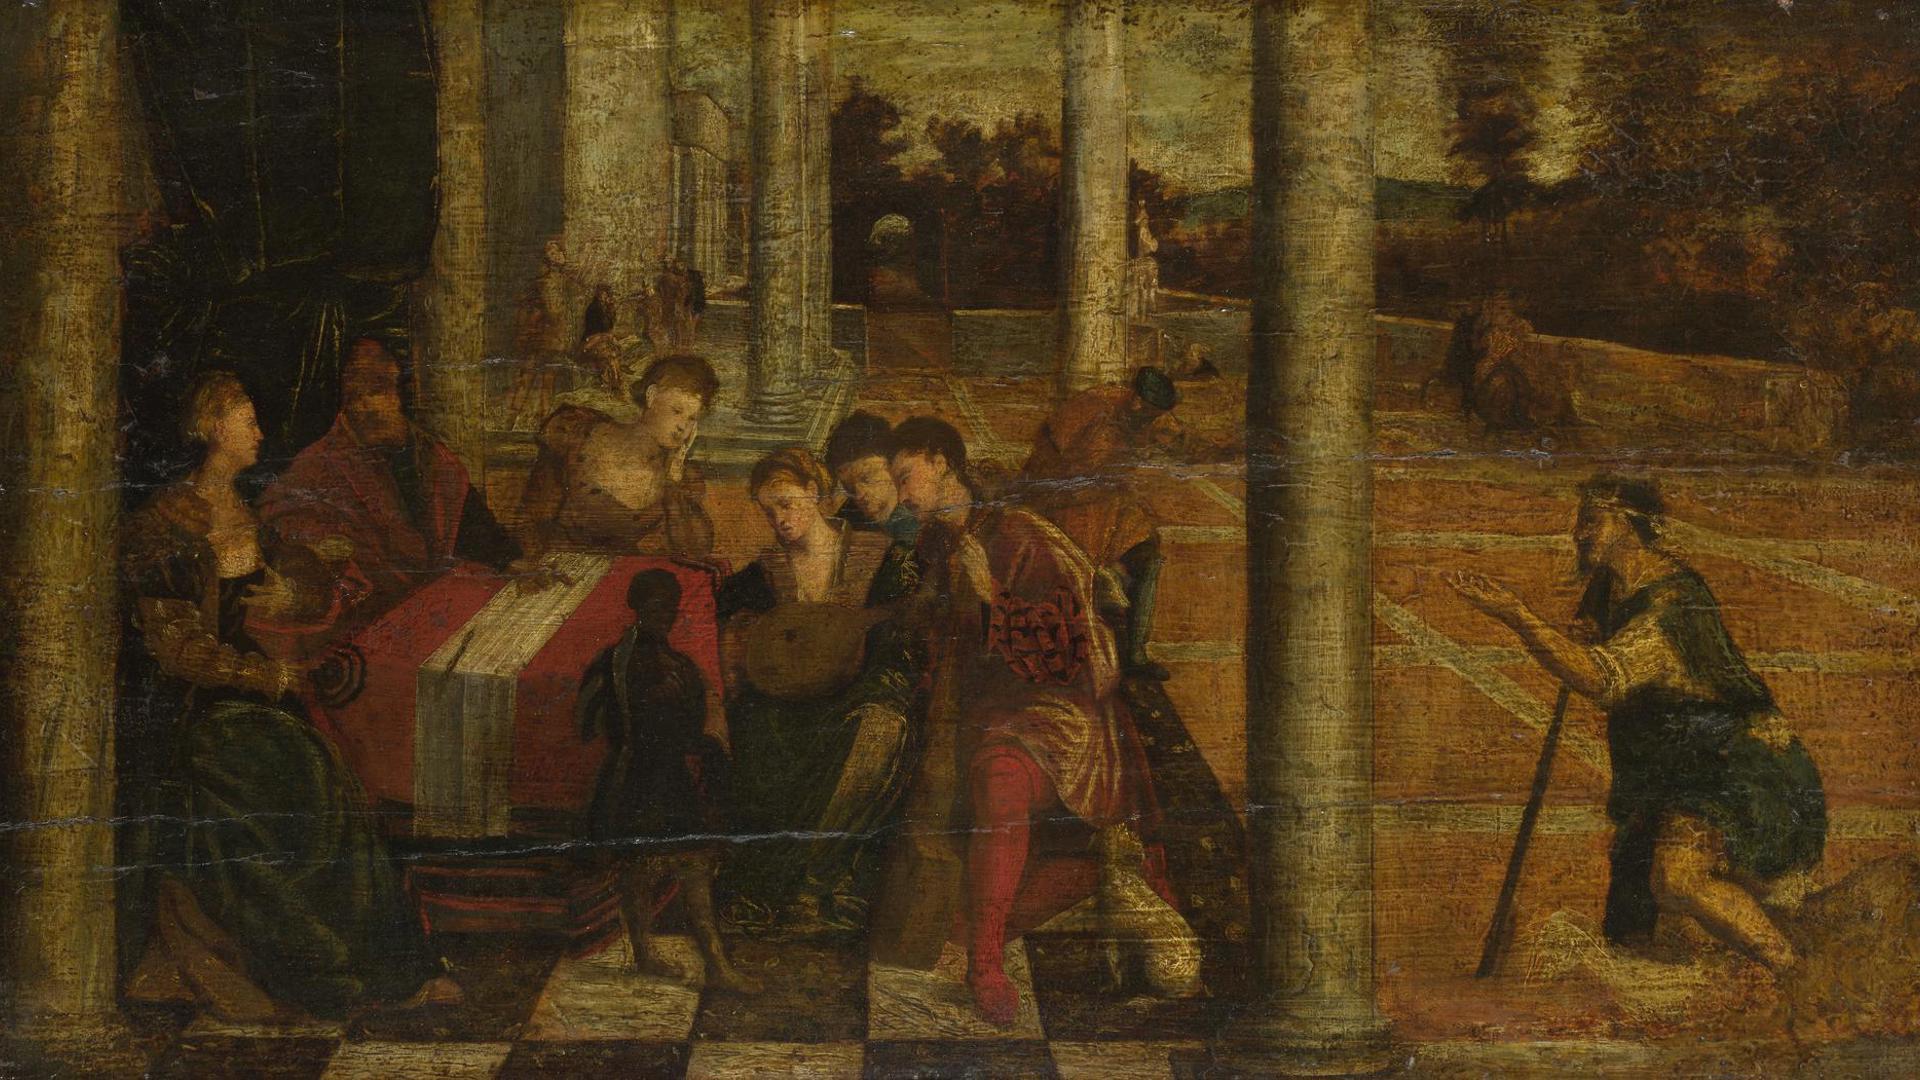 Dives and Lazarus by After Bonifazio di Pitati